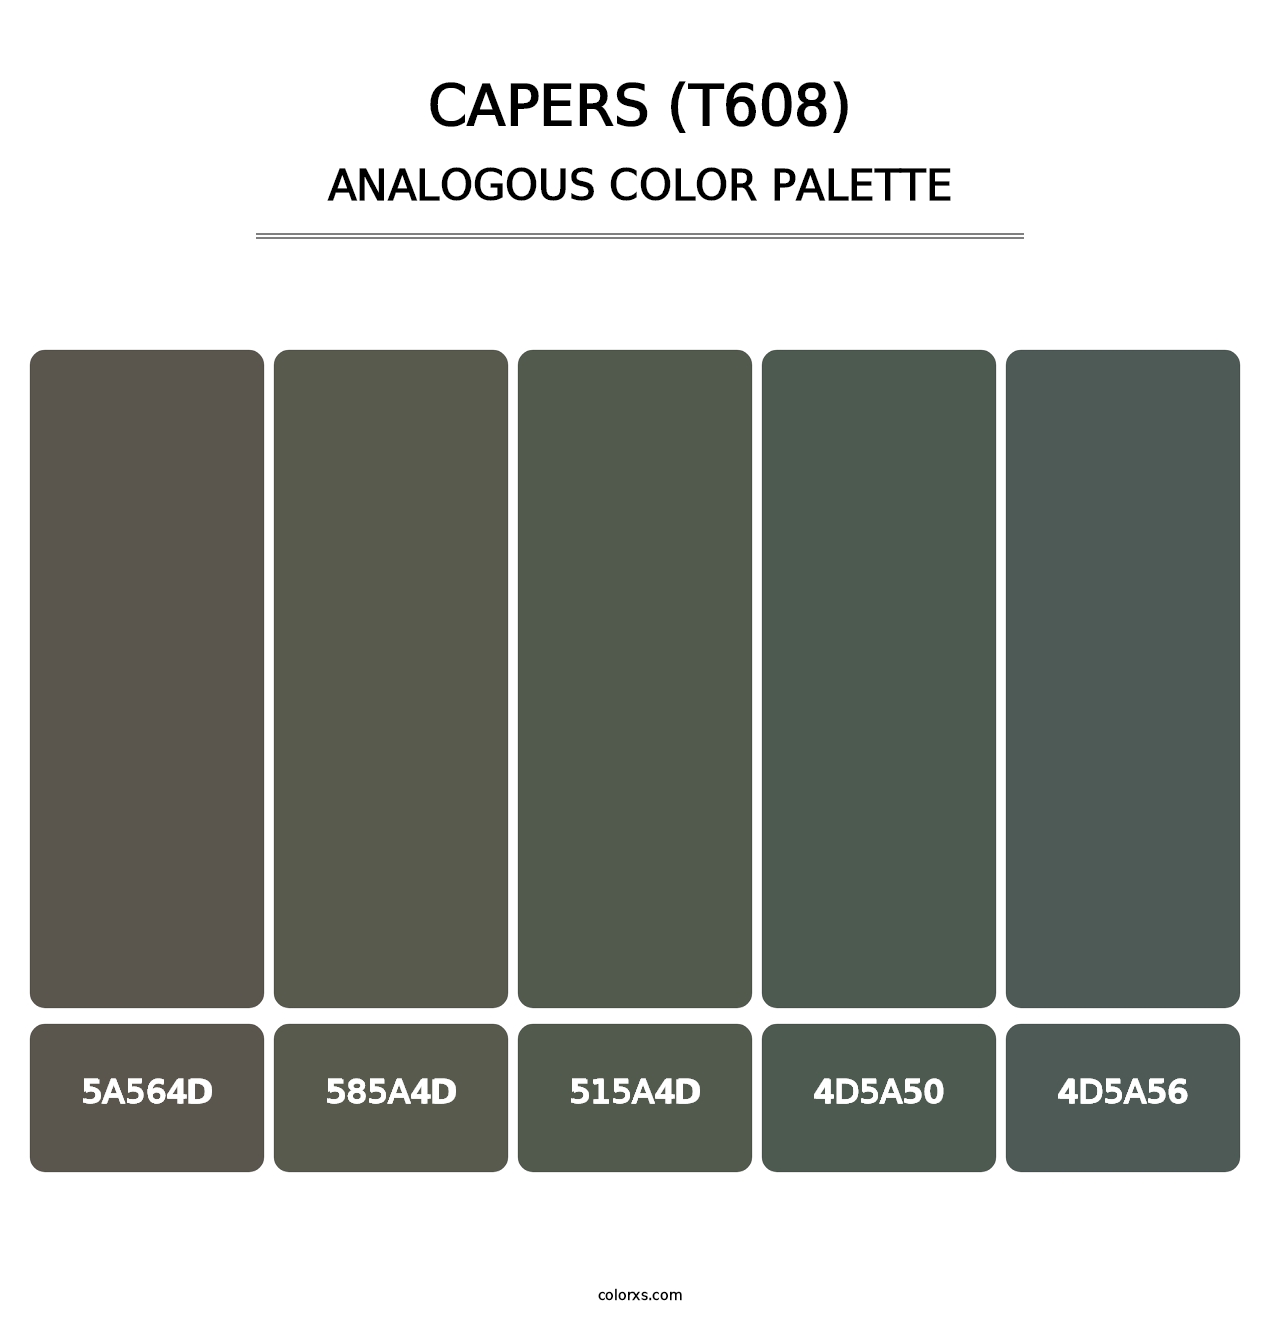 Capers (T608) - Analogous Color Palette